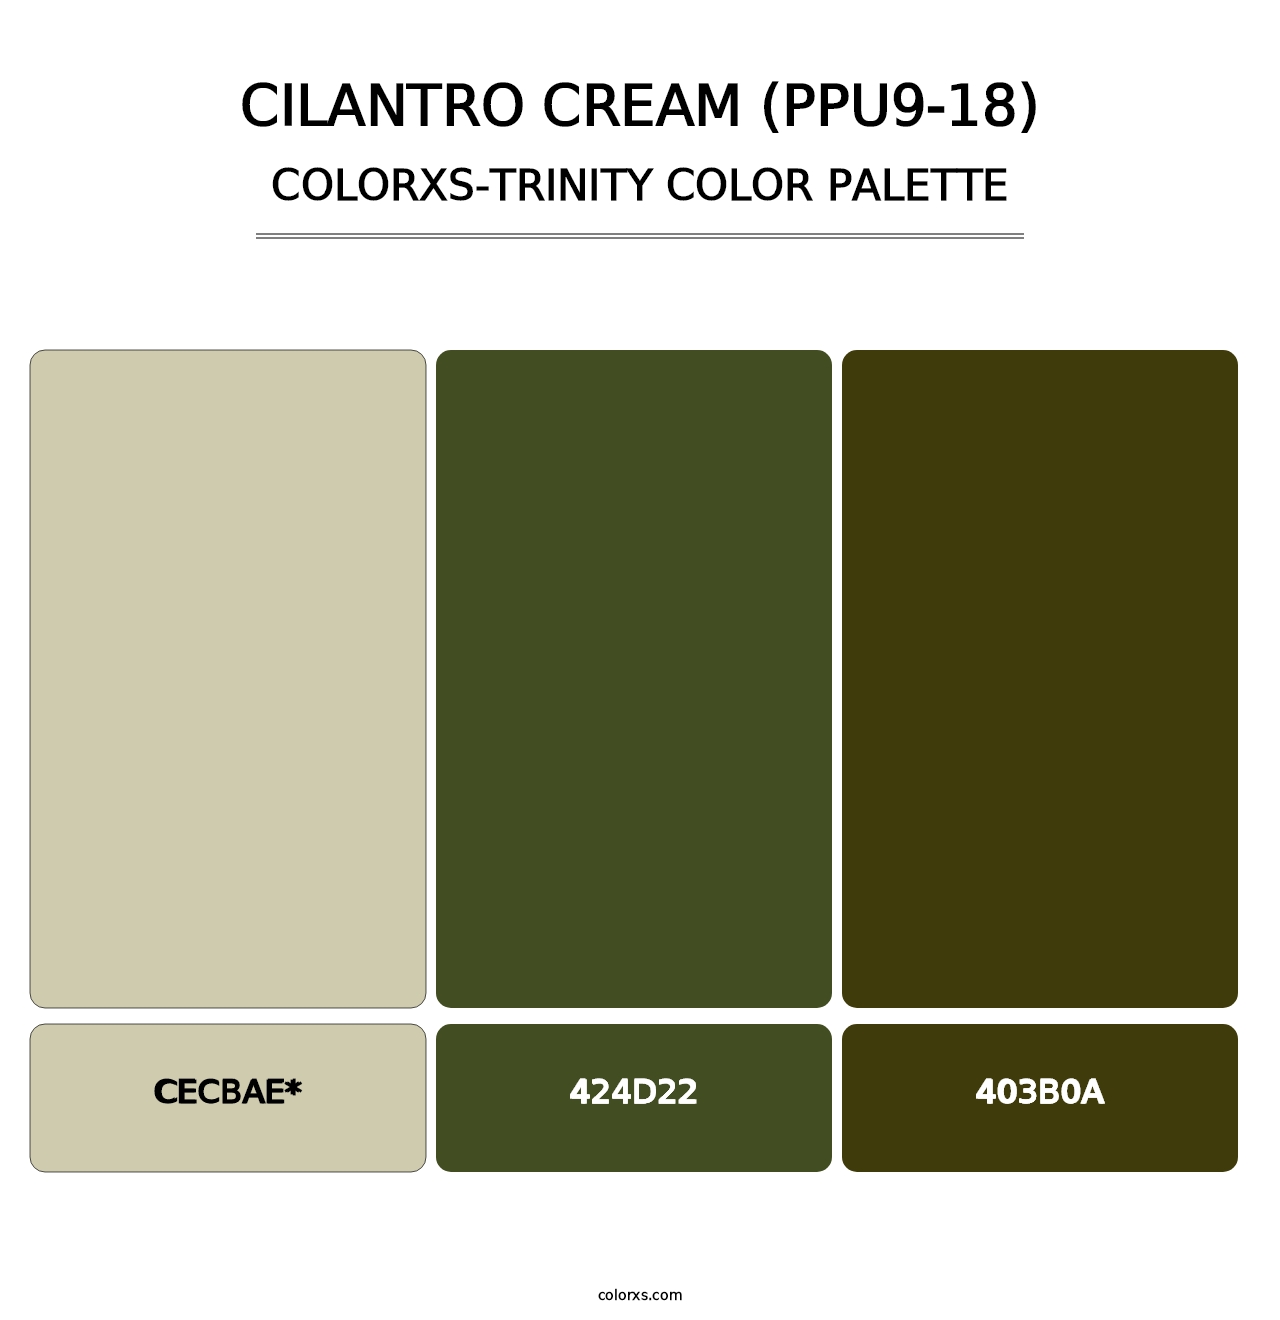 Cilantro Cream (PPU9-18) - Colorxs Trinity Palette